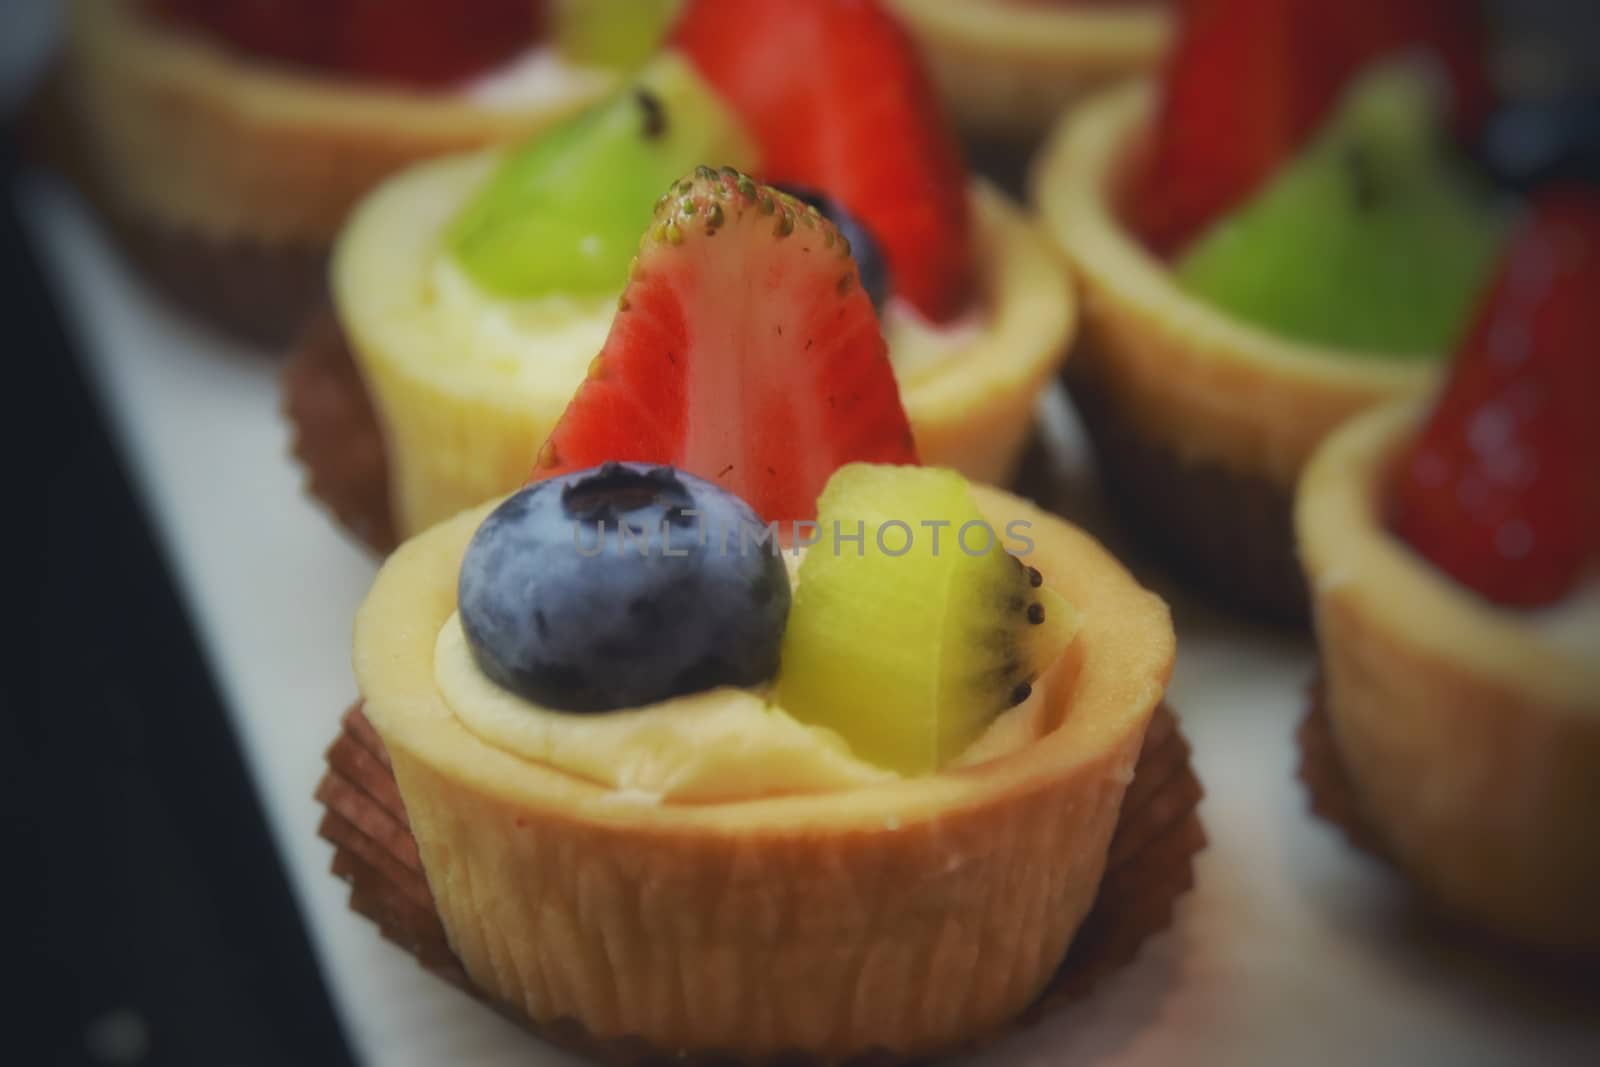 Summer themed fruit tarts for the perfect summertime dessert